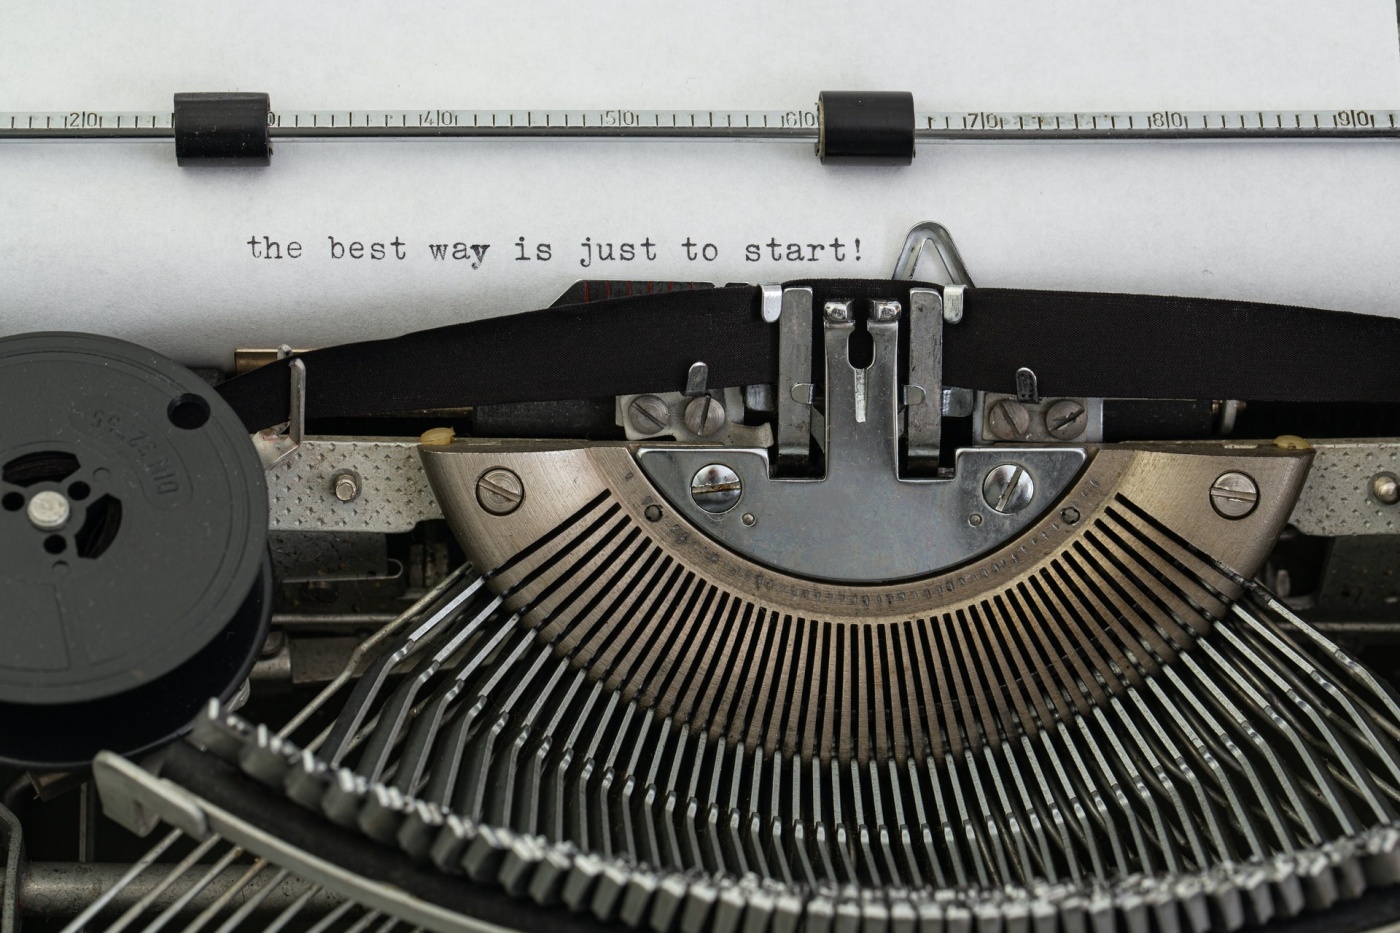 "Cách tốt nhất là chỉ cần bắt đầu!" viết trên máy đánh chữ.